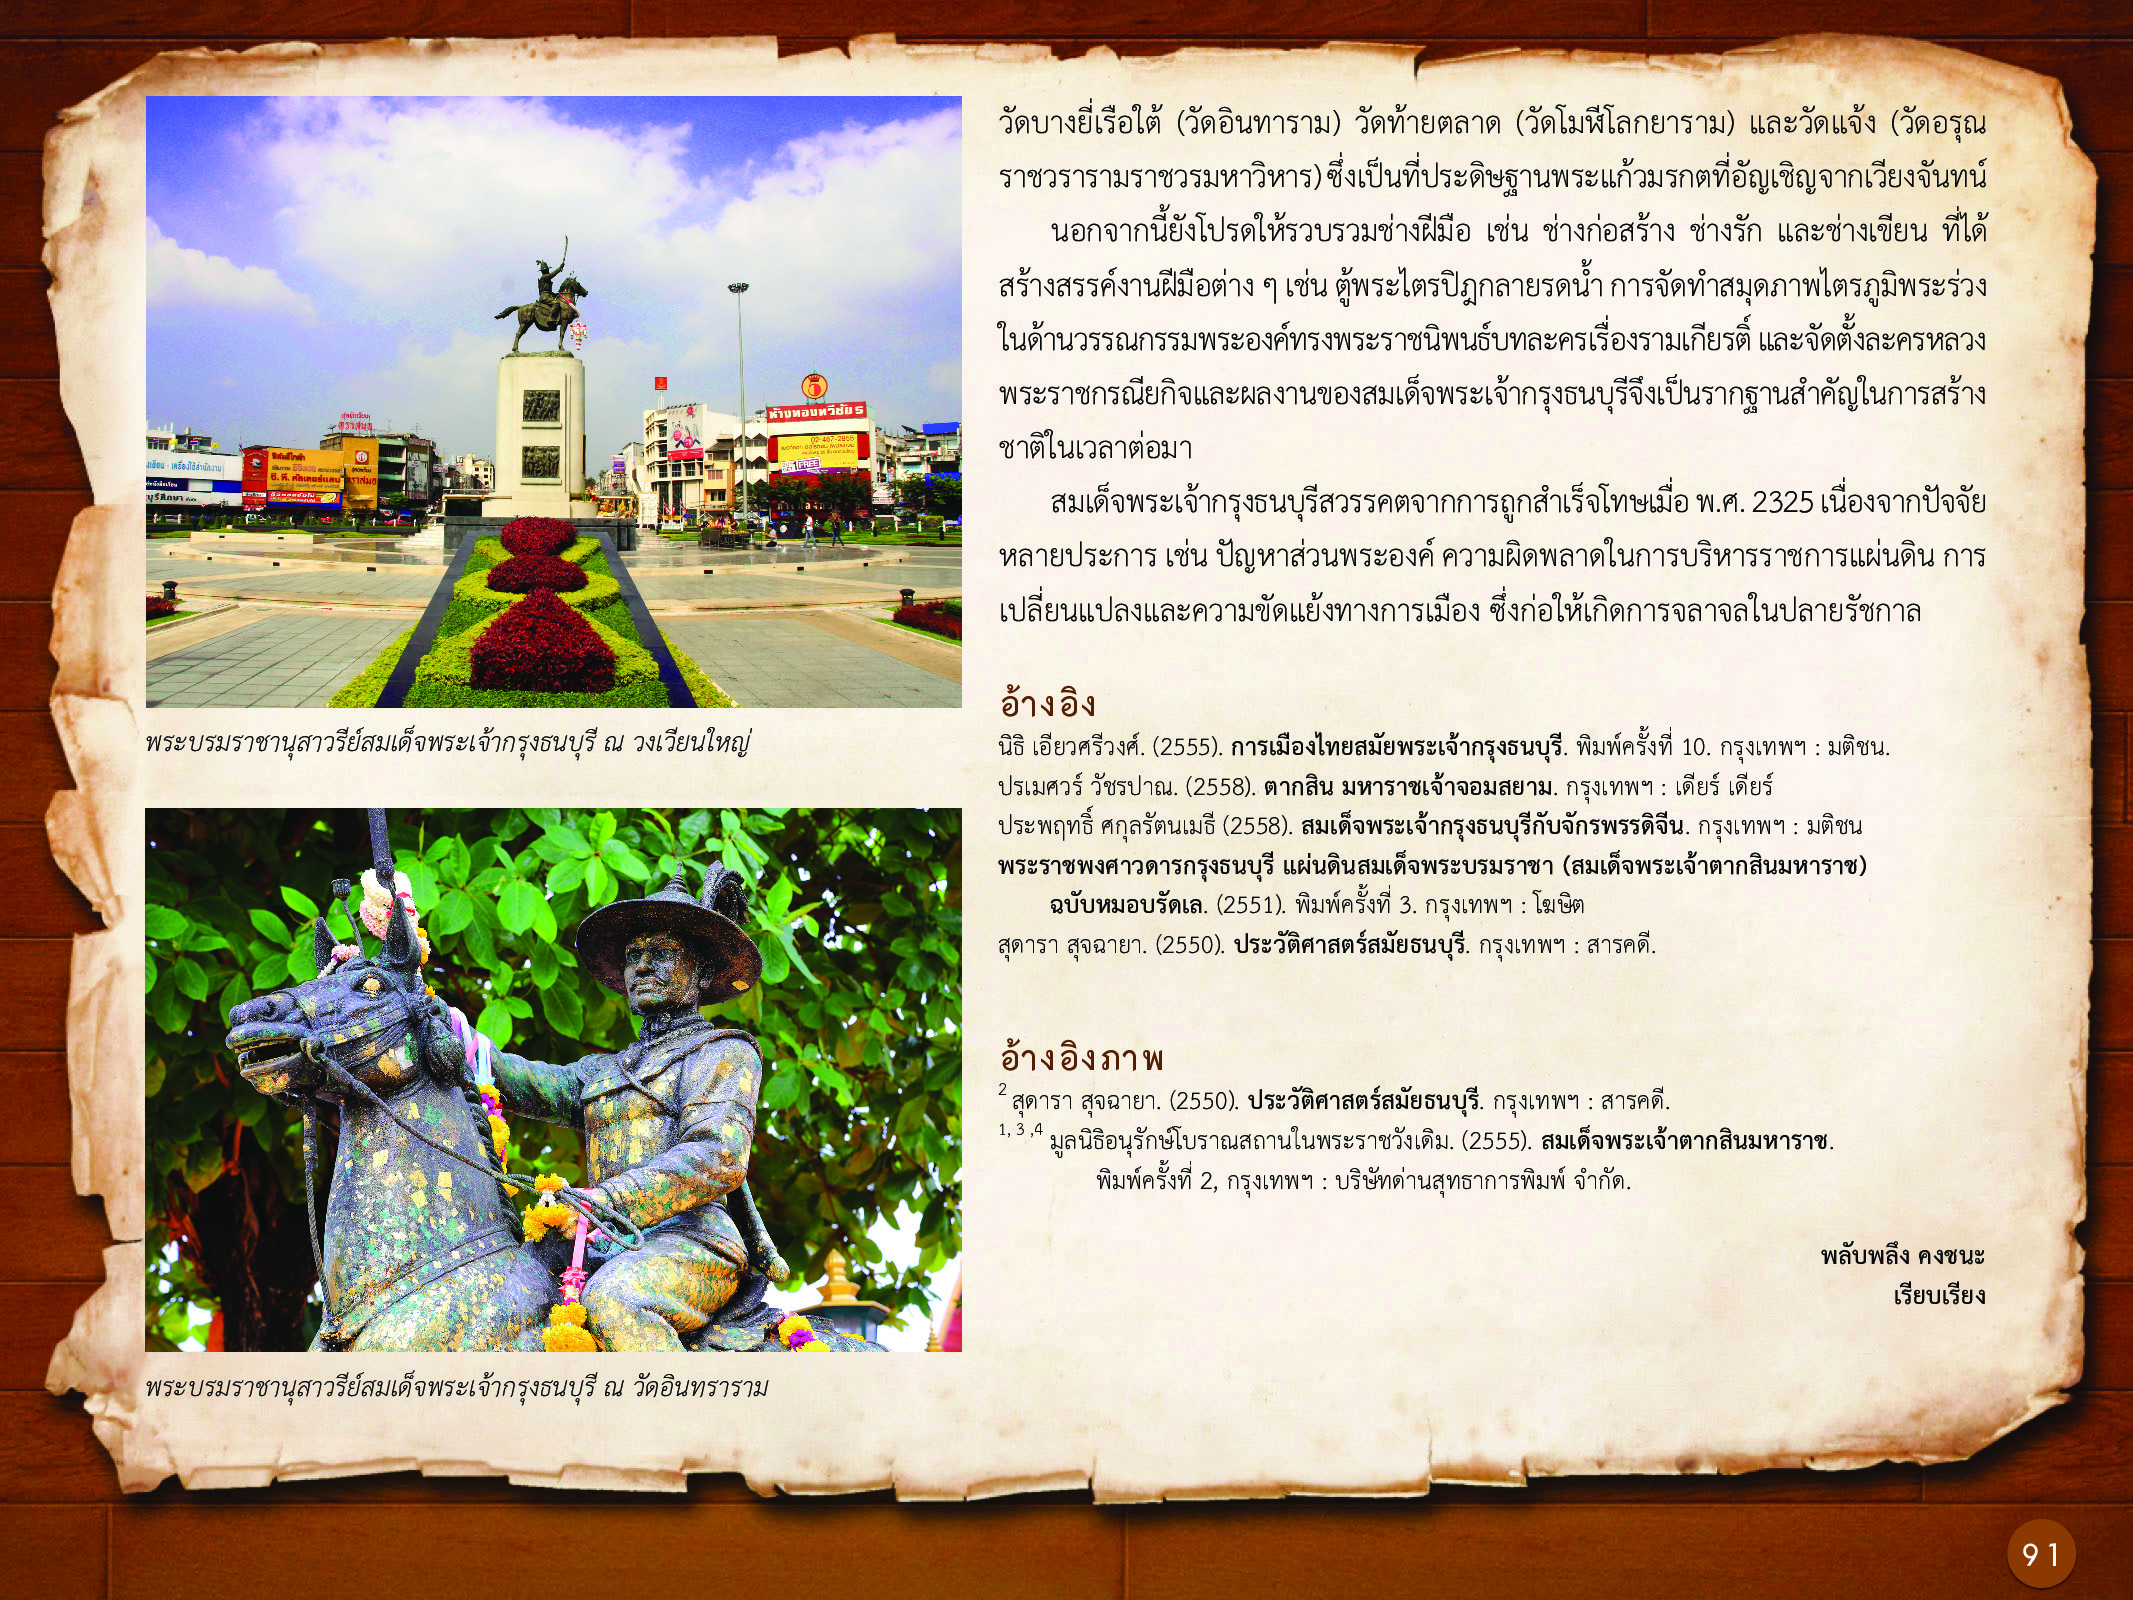 ประวัติศาสตร์กรุงธนบุรี ./images/history_dhonburi/91.jpg